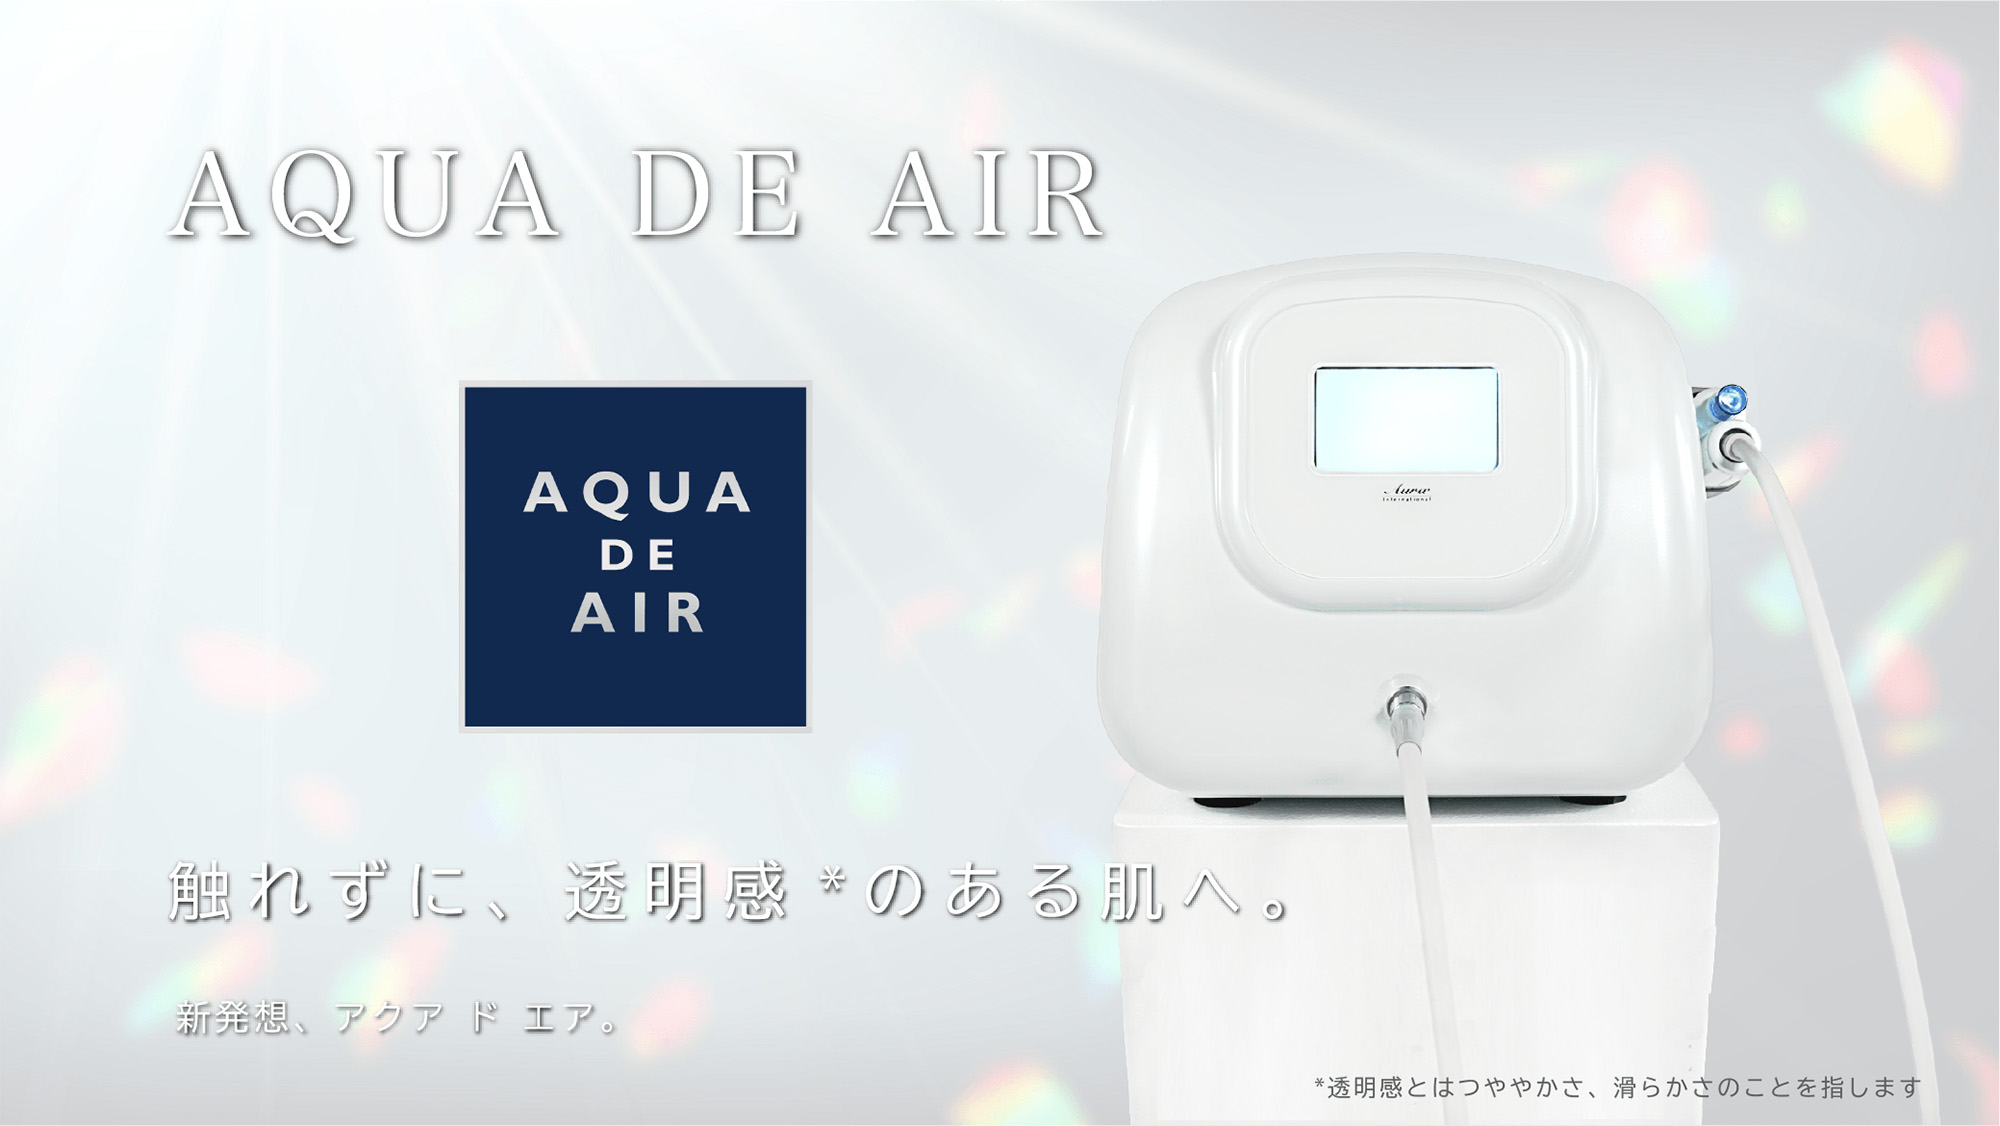 アクア ド エア [ ニードルレスインジェクター ] | 日本セノリティクス 